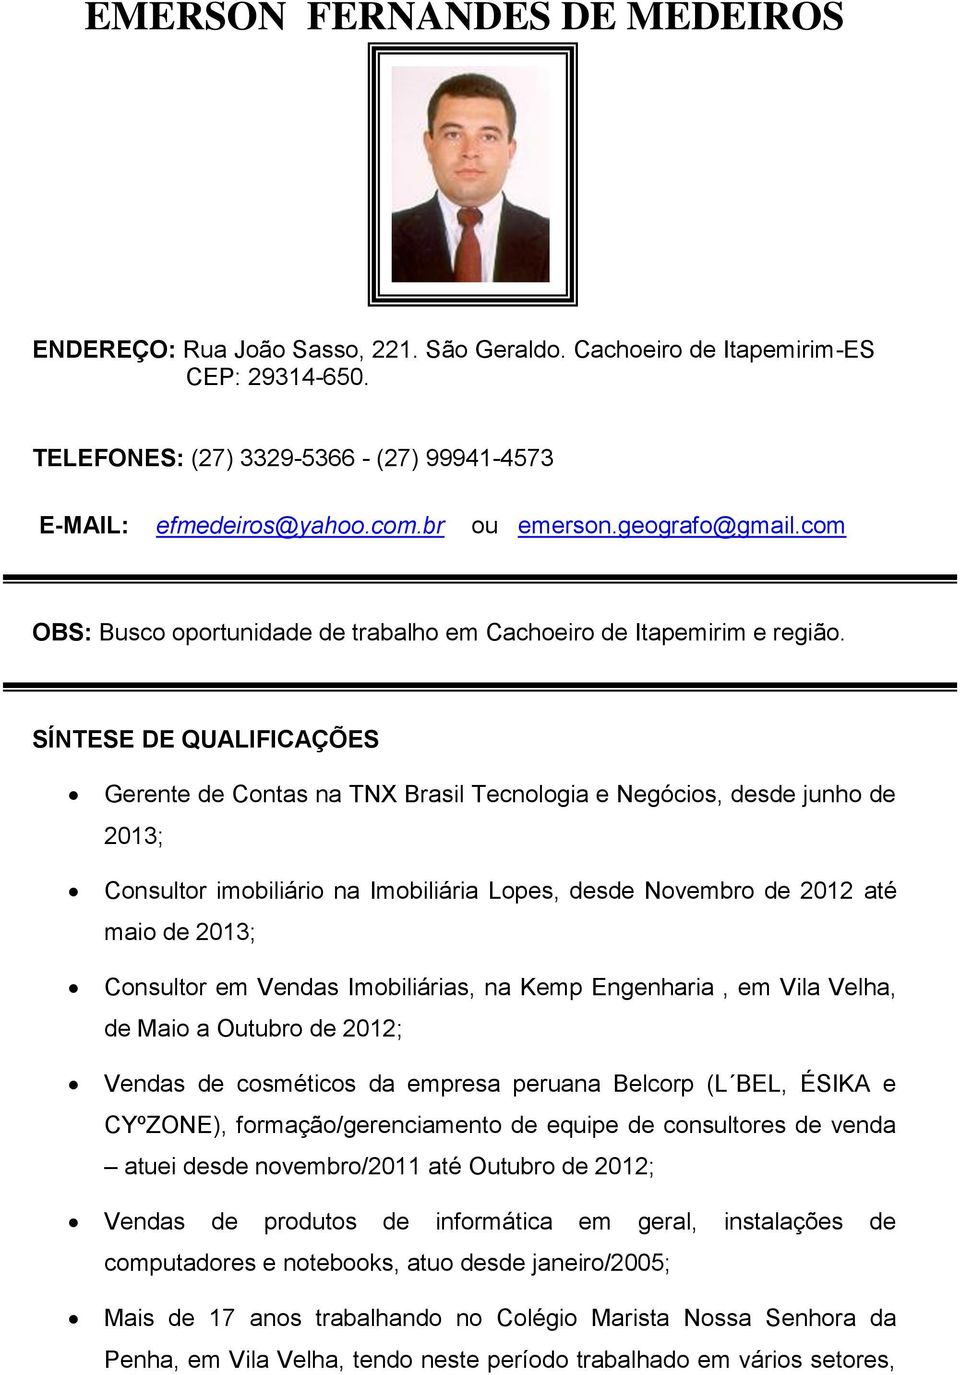 SÍNTESE DE QUALIFICAÇÕES Gerente de Contas na TNX Brasil Tecnologia e Negócios, desde junho de 2013; Consultor imobiliário na Imobiliária Lopes, desde Novembro de 2012 até maio de 2013; Consultor em